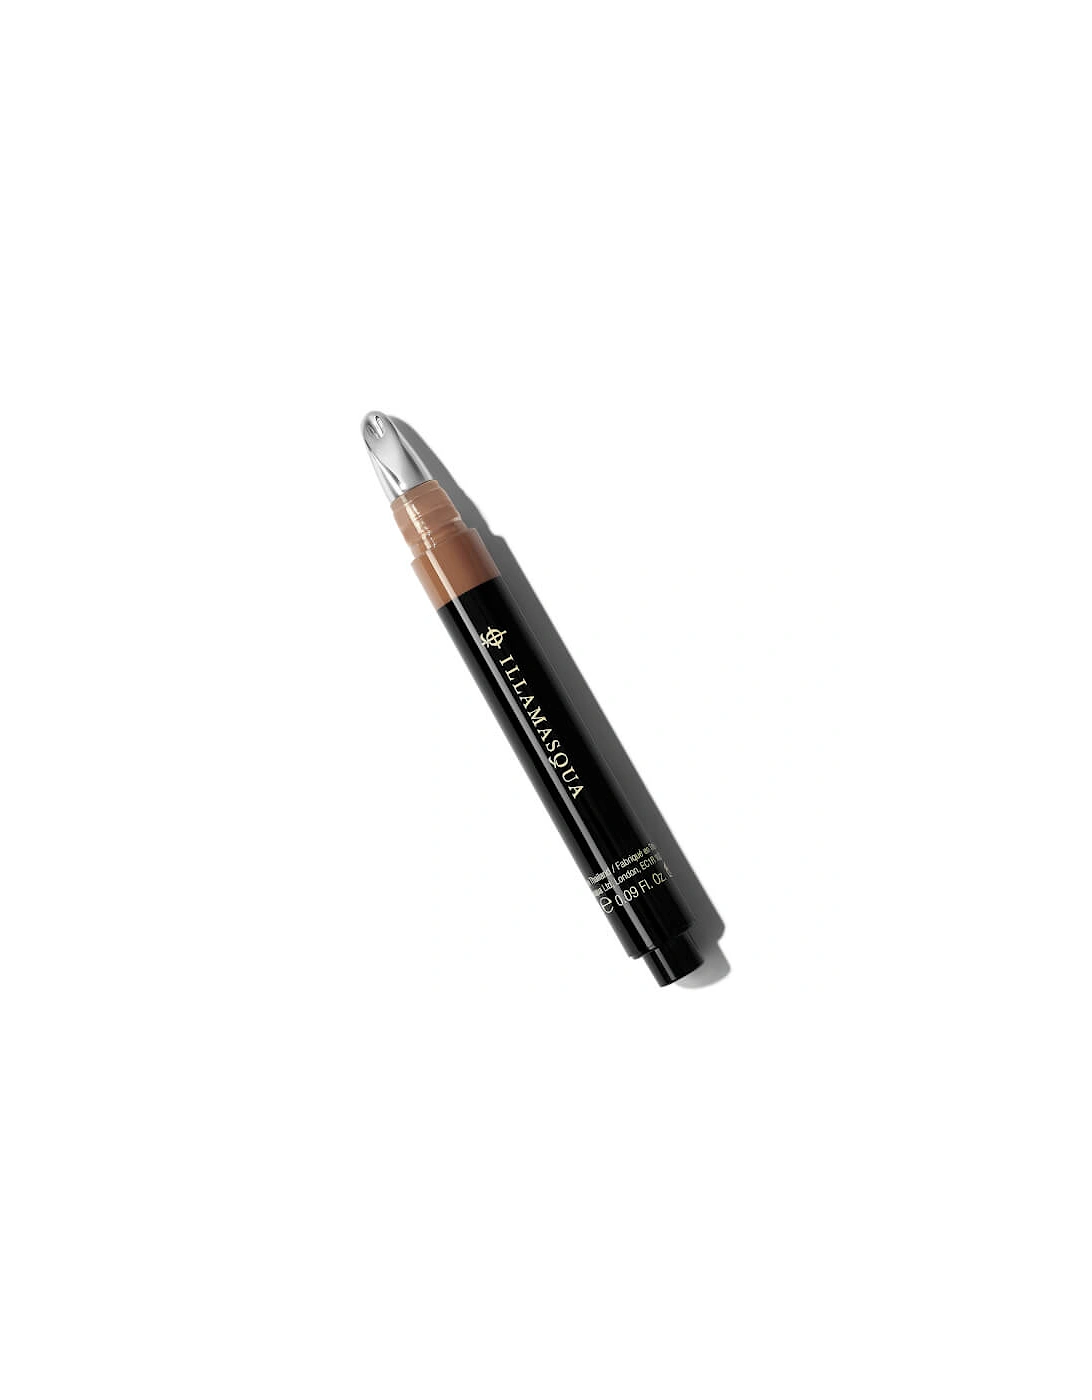 Skin Base Concealer Pen - Dark 2, 2 of 1